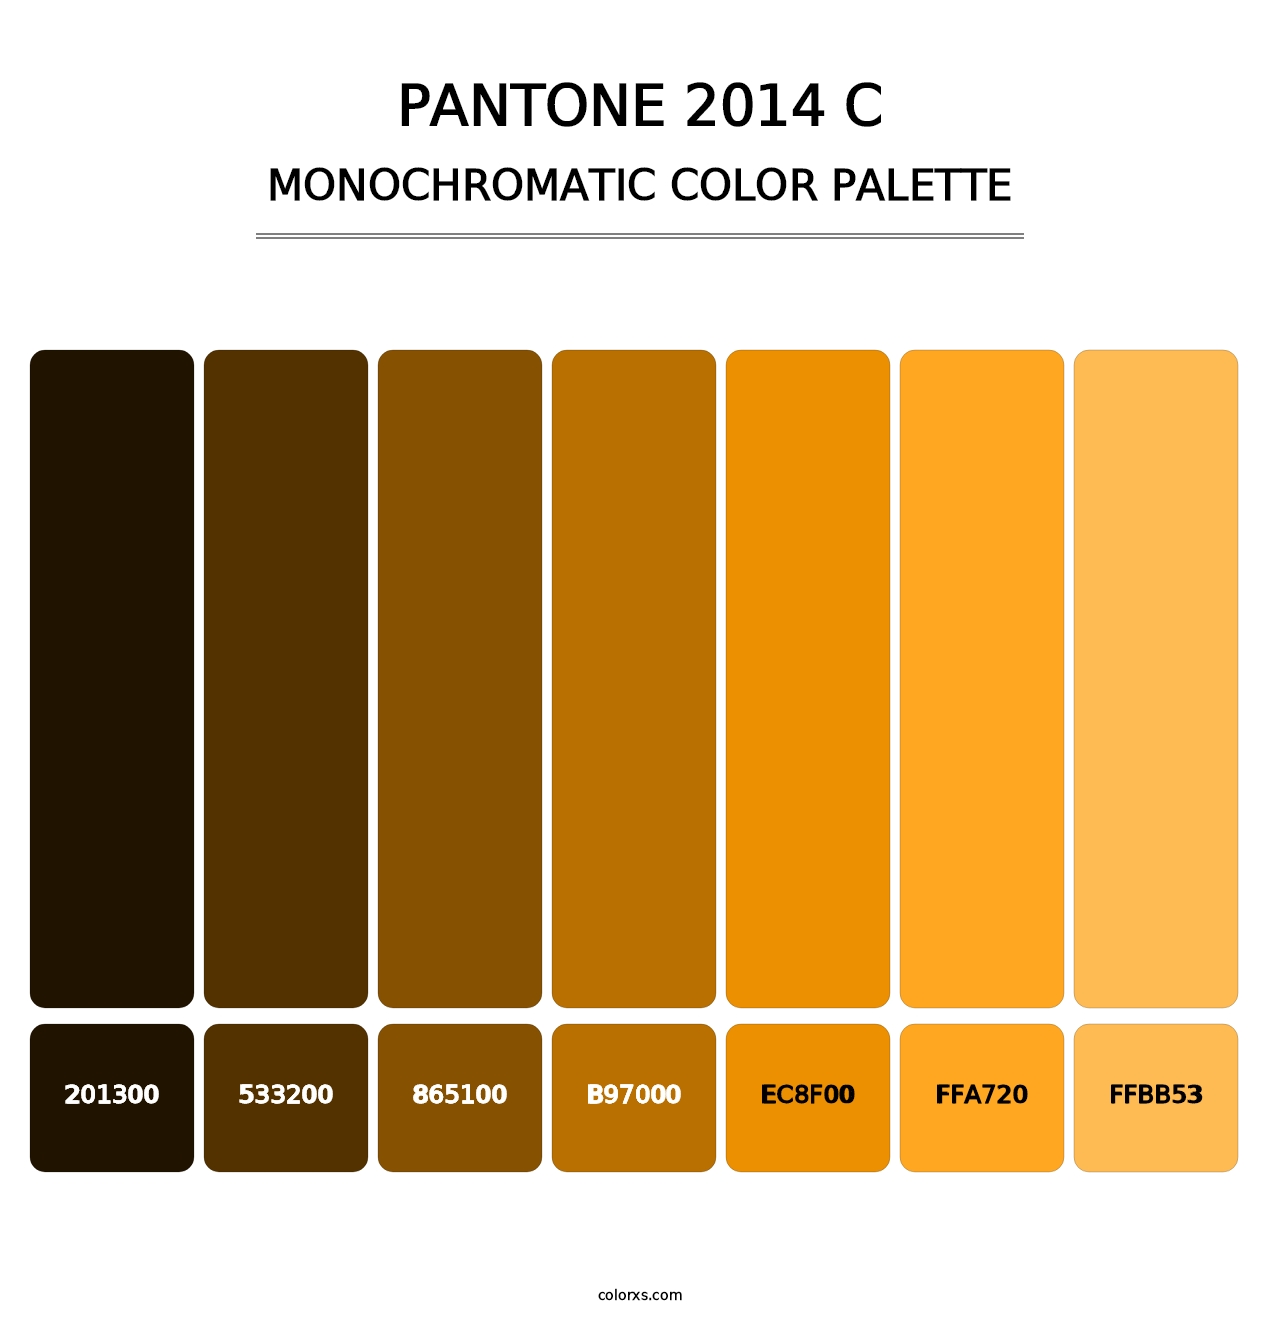 PANTONE 2014 C - Monochromatic Color Palette